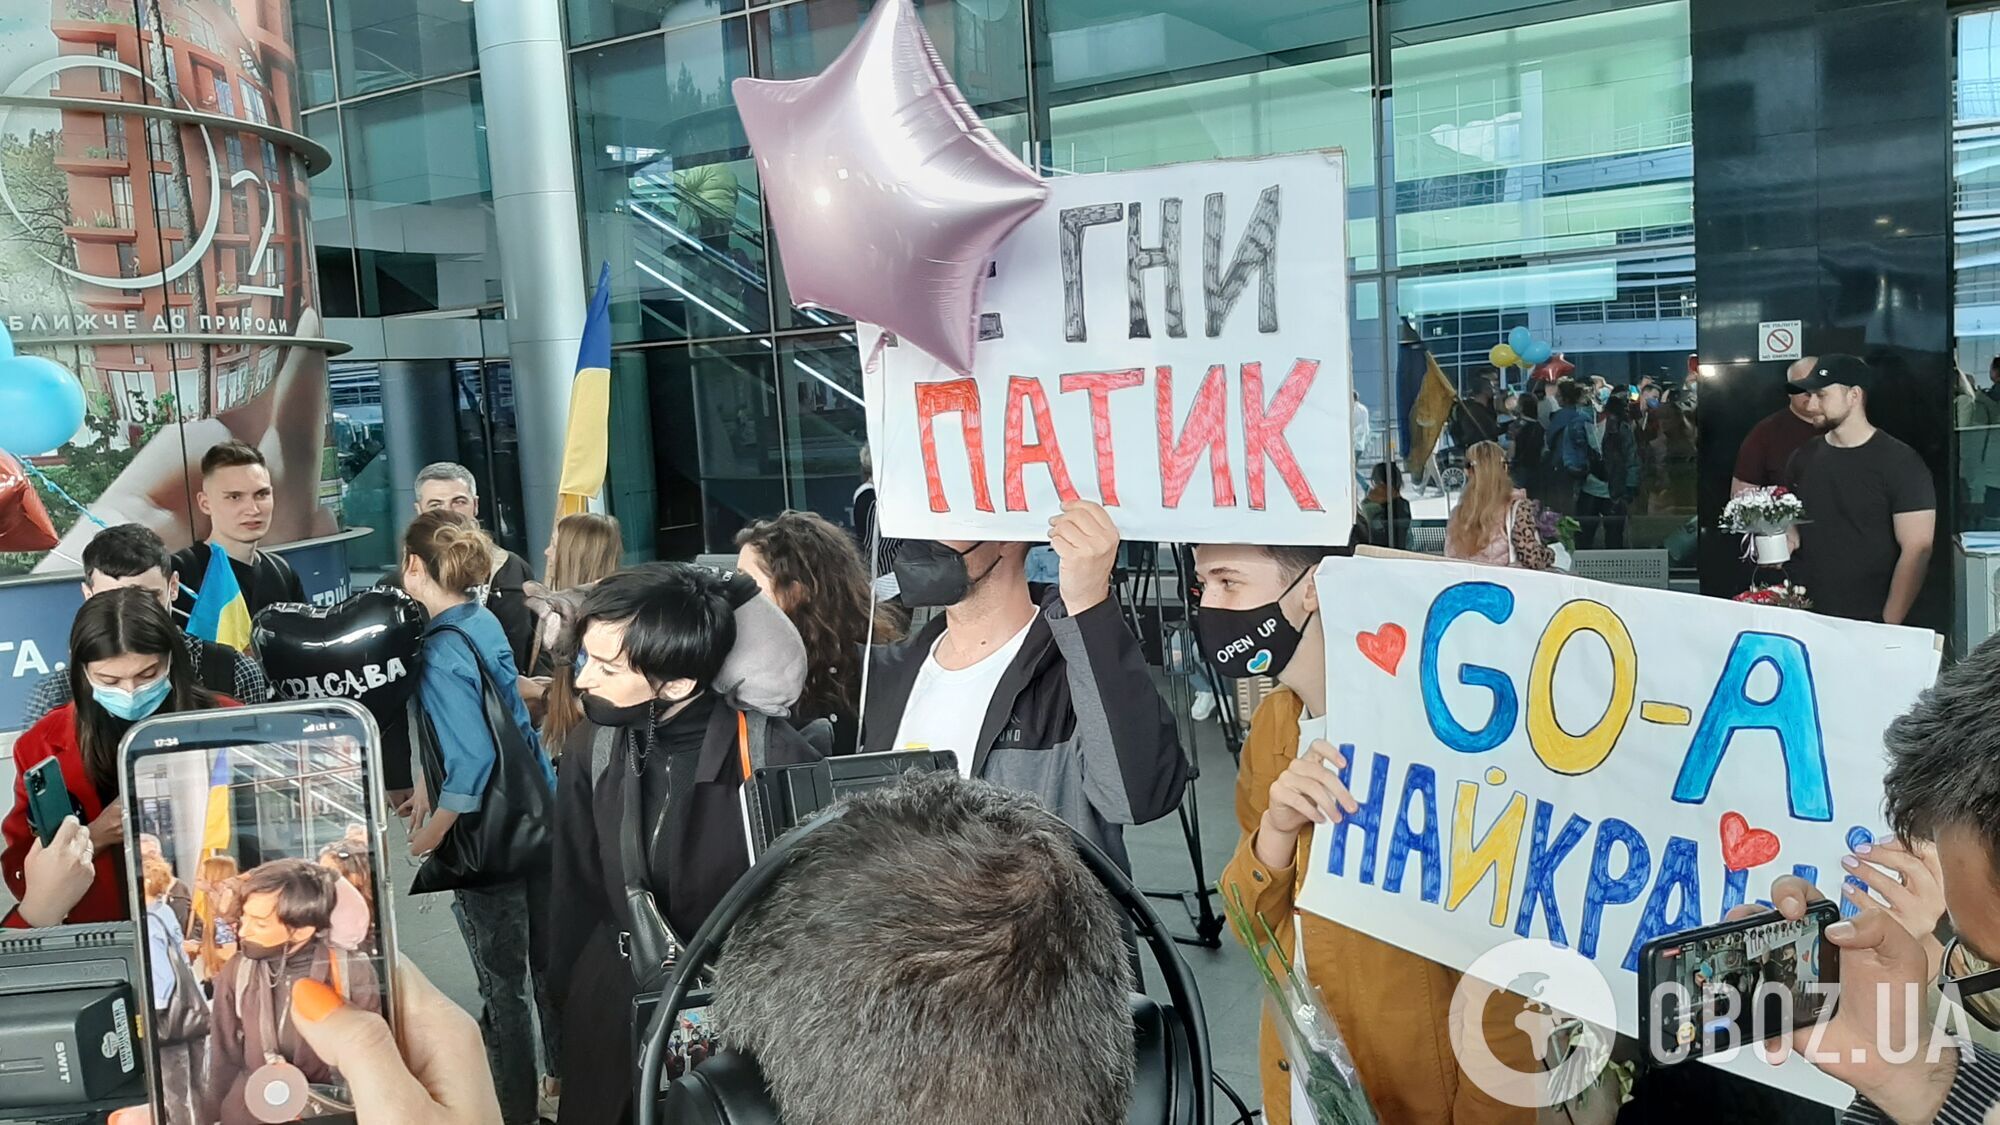 Go_A вернулись с Евровидения 2021, украинцы устроили теплый прием в аэропорту: фото и видео